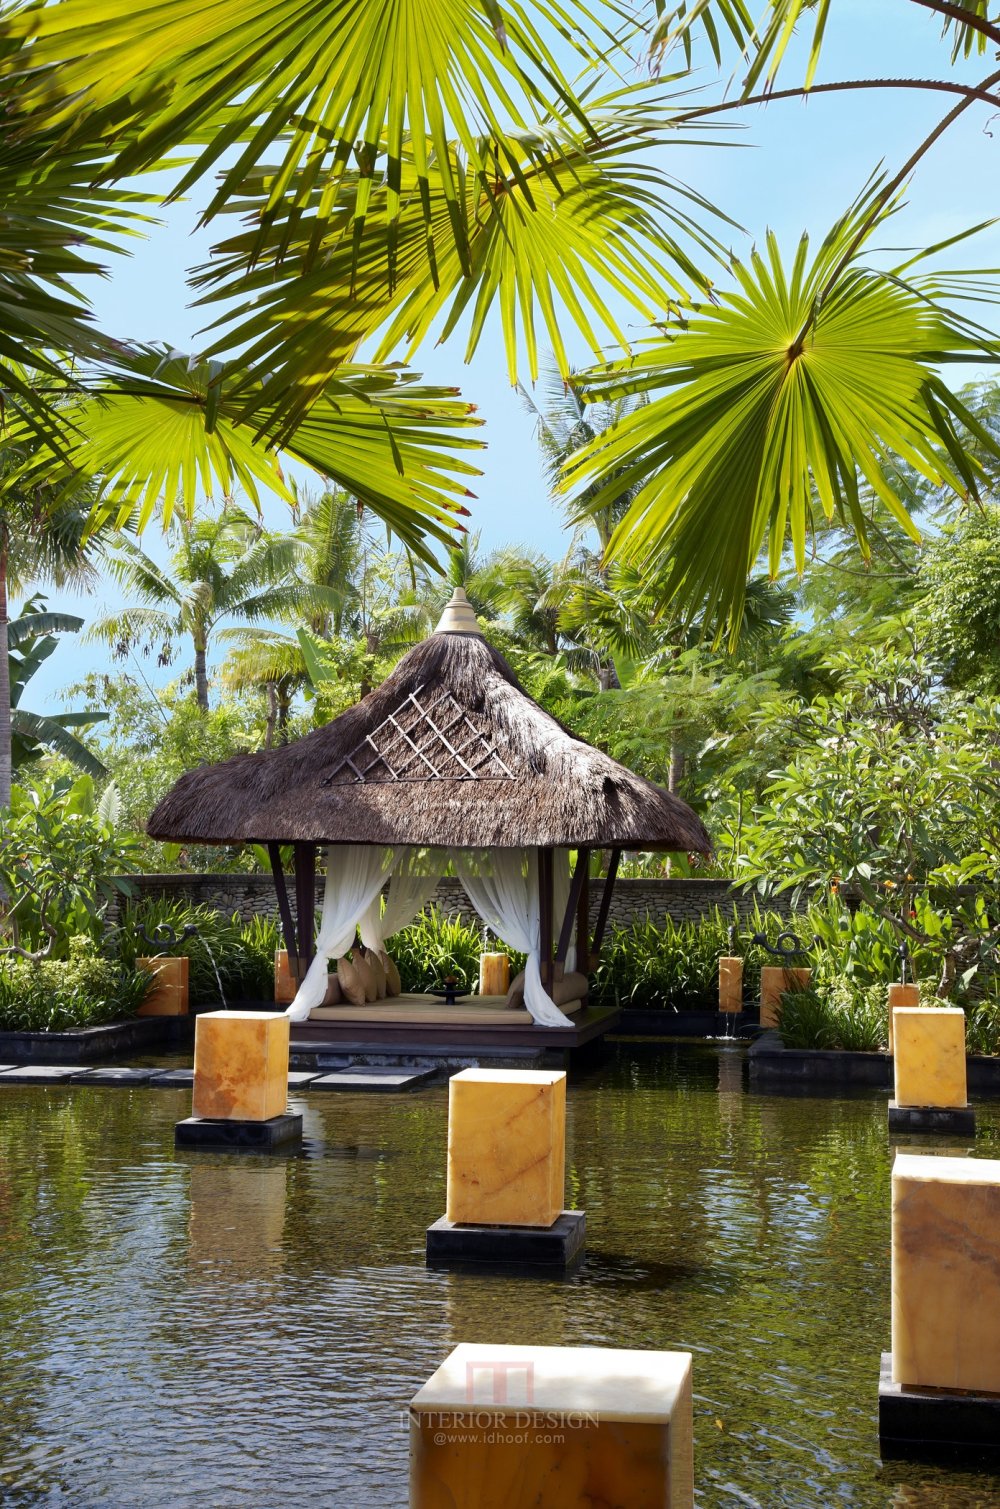 巴厘岛瑞吉酒店(官方摄影) The St. Regis Bali Resort, Bali_8402596098_274a1e7511_o.jpg